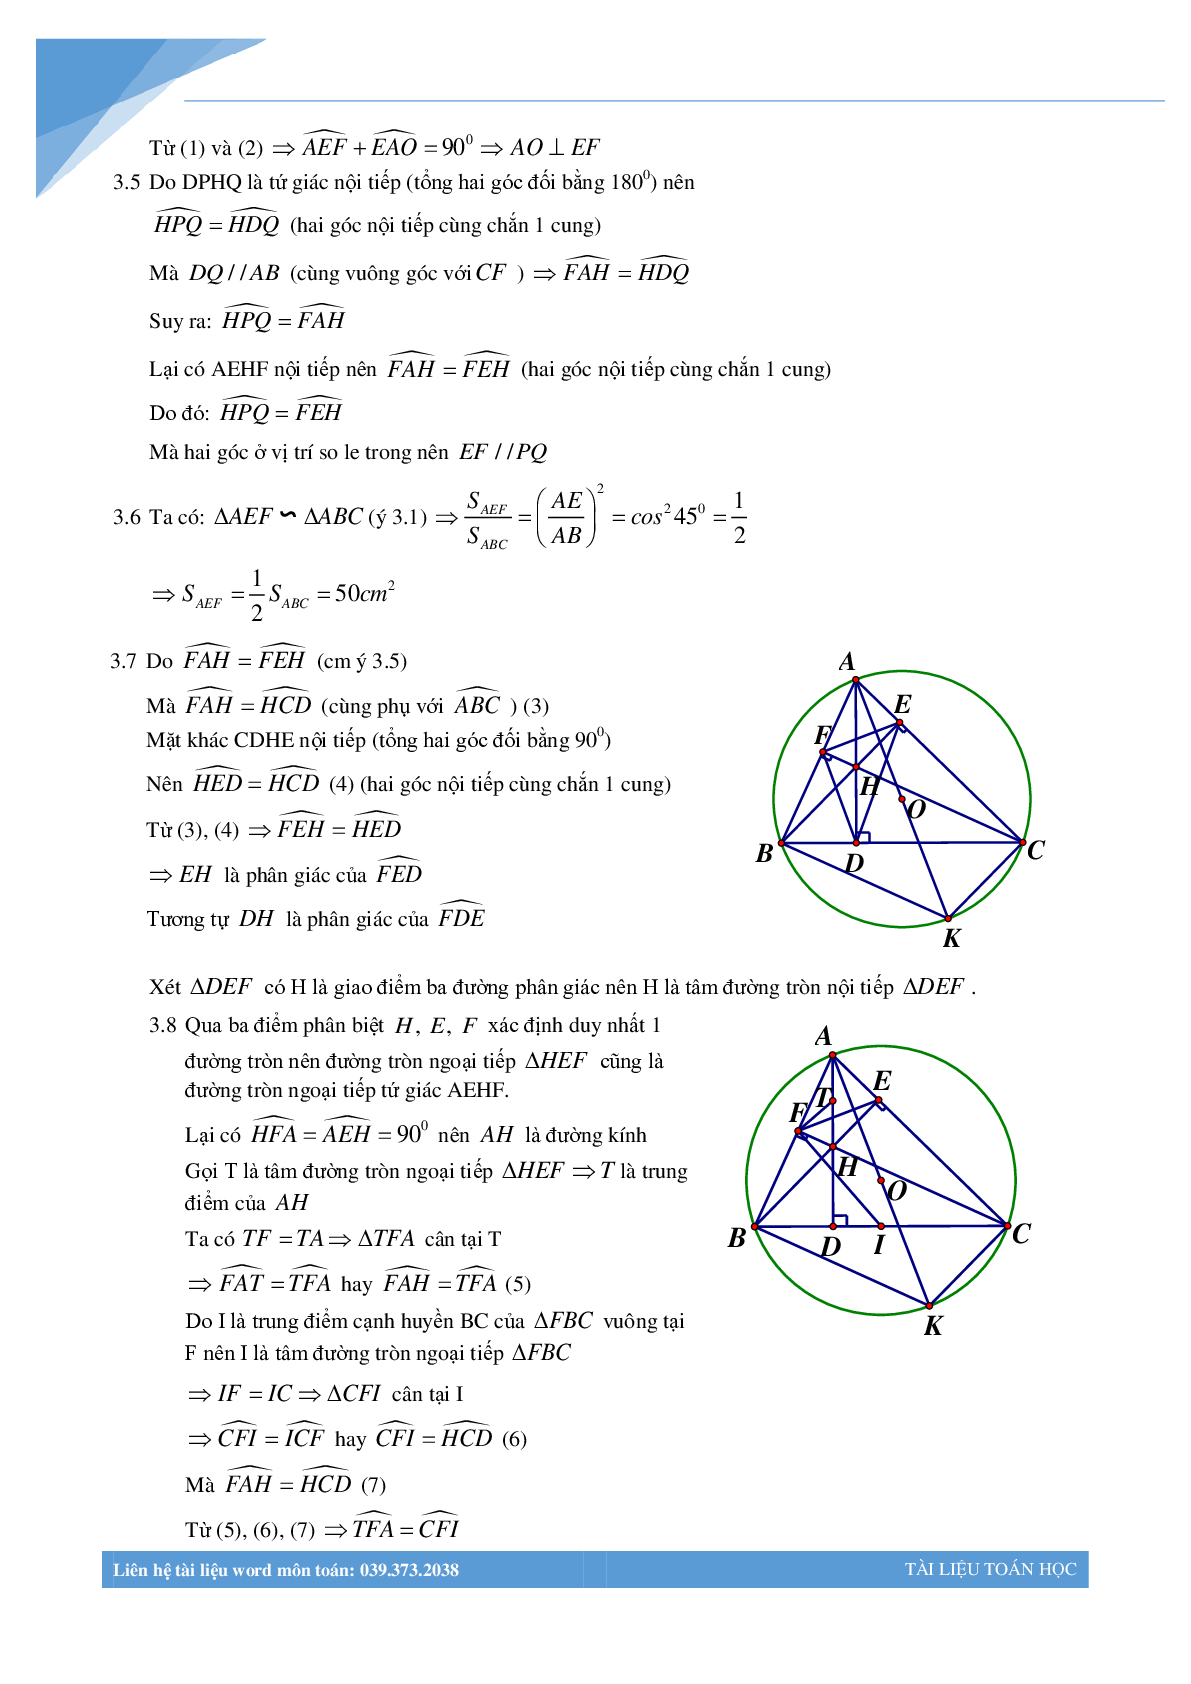 Chùm bài toán hình học luyện thi vào lớp 10 (trang 4)